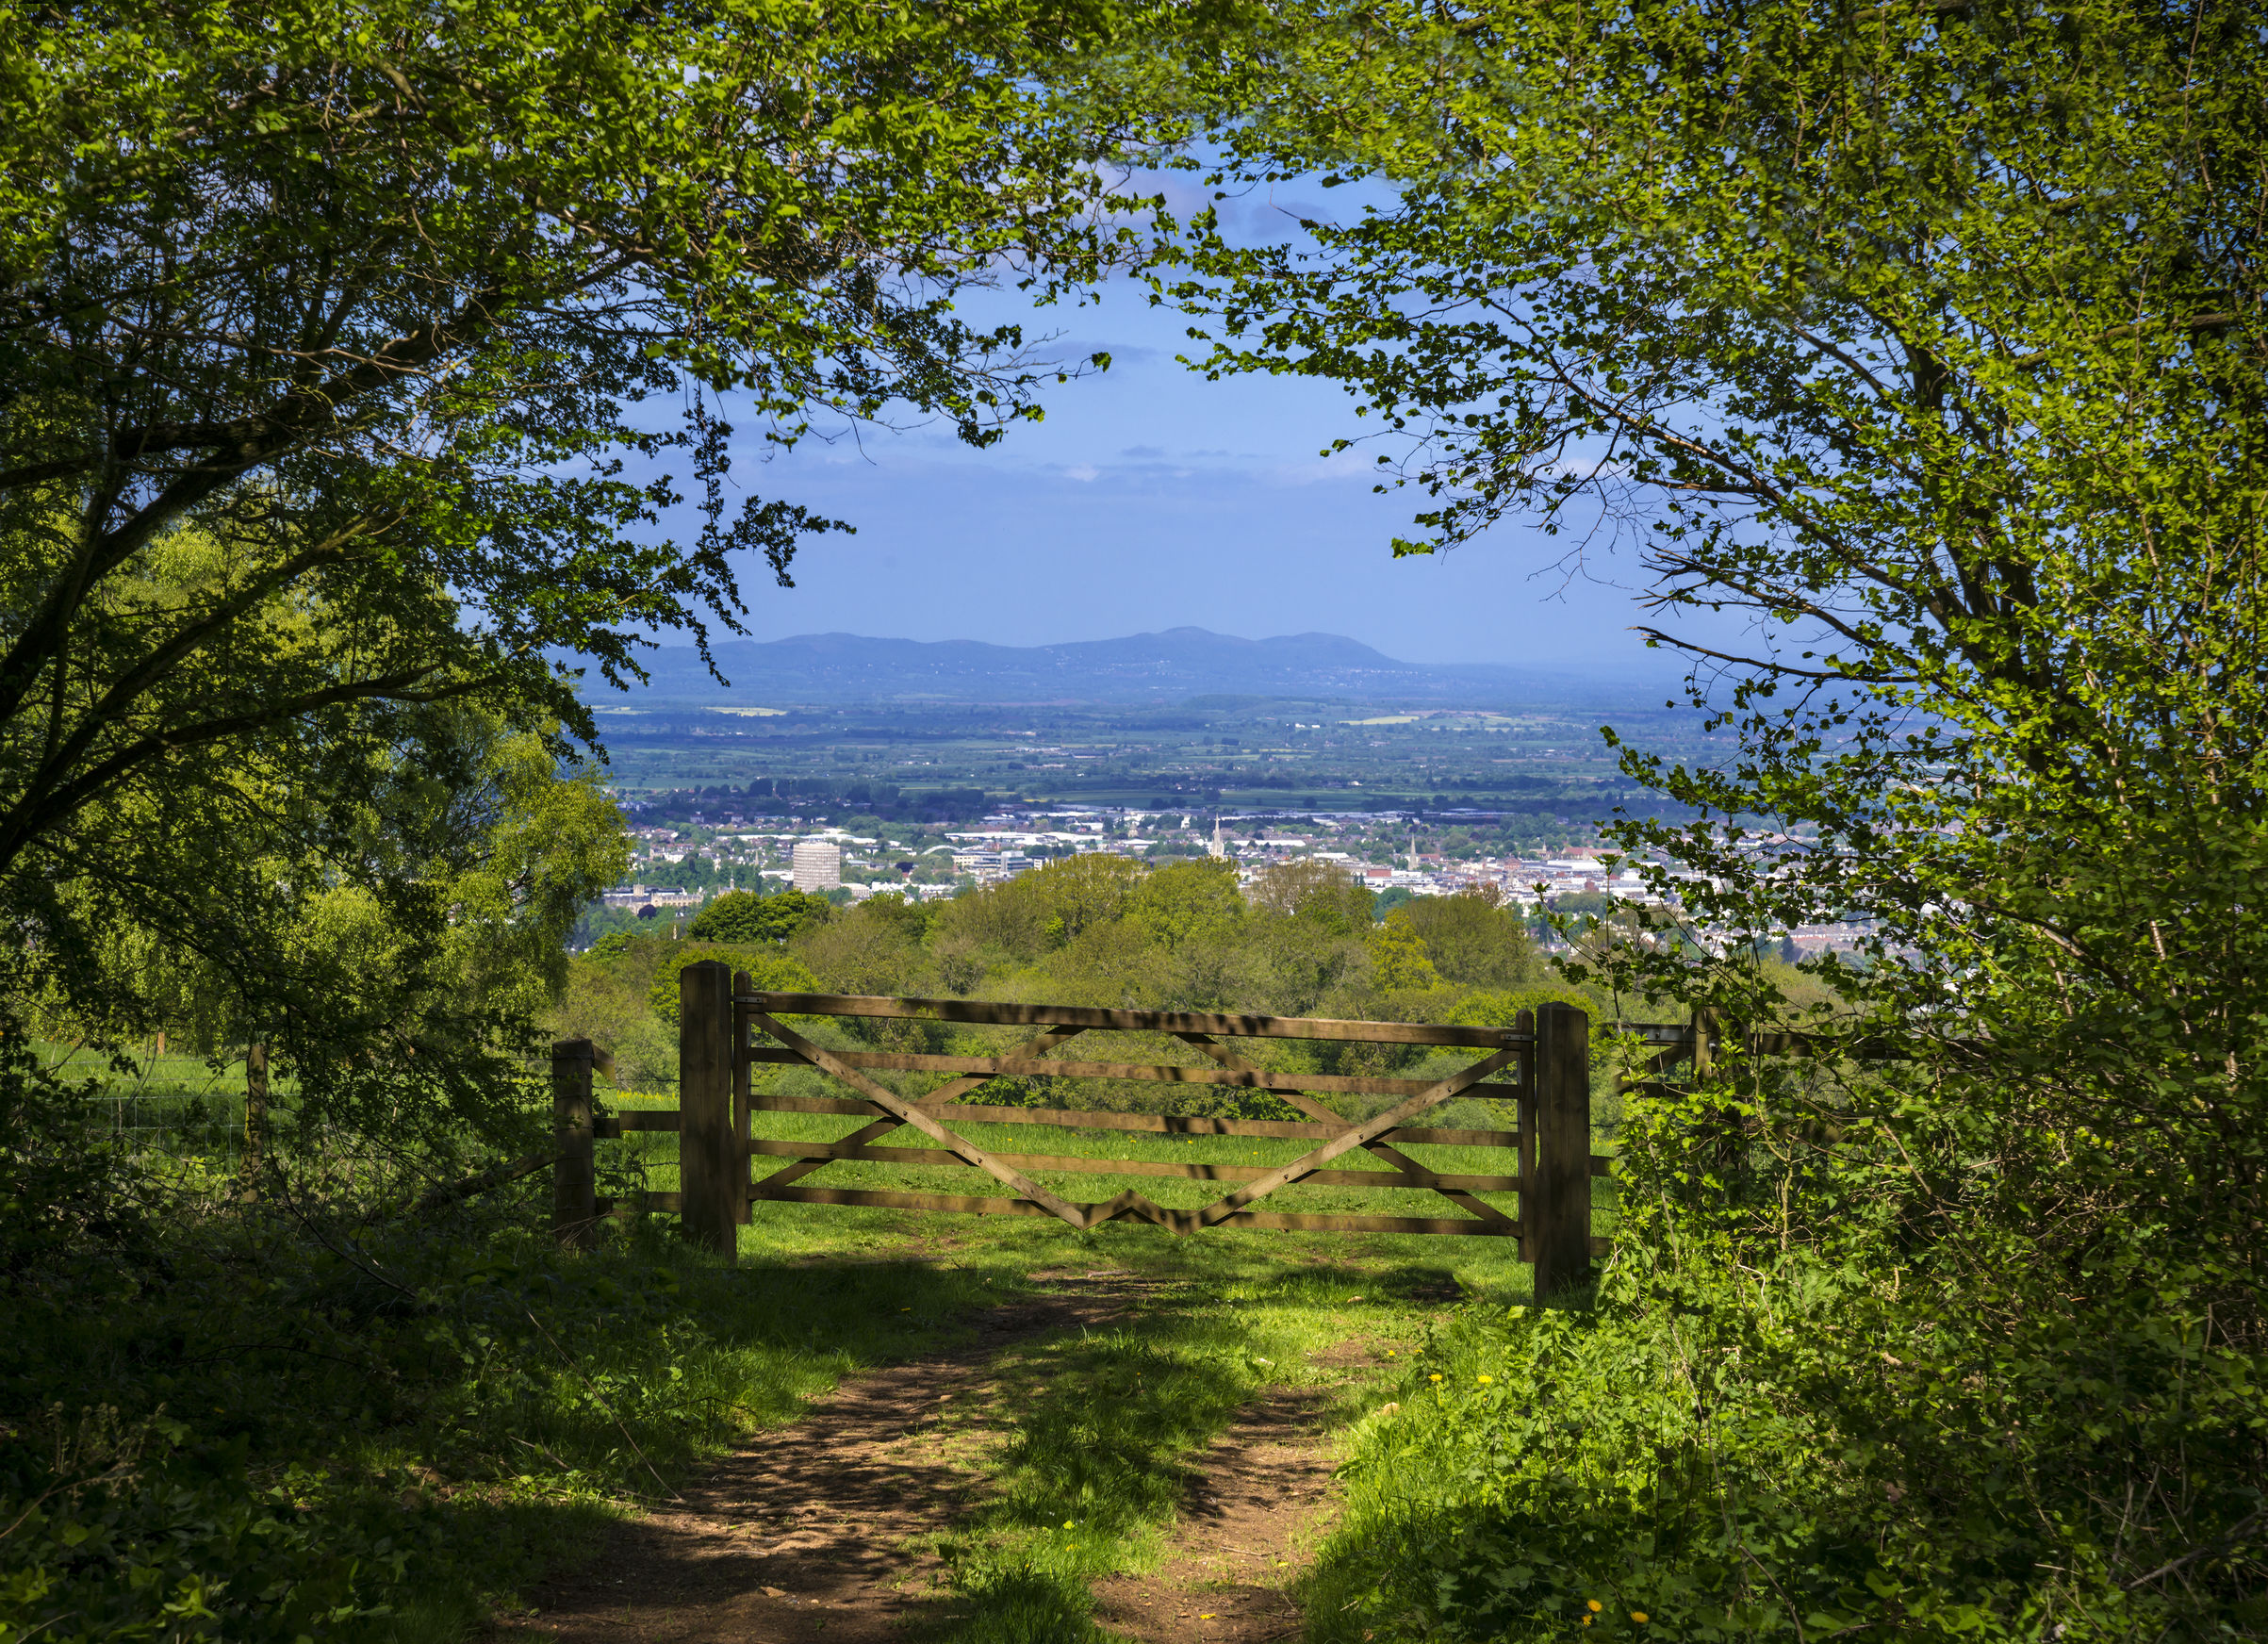 cotswold way vista across green fields